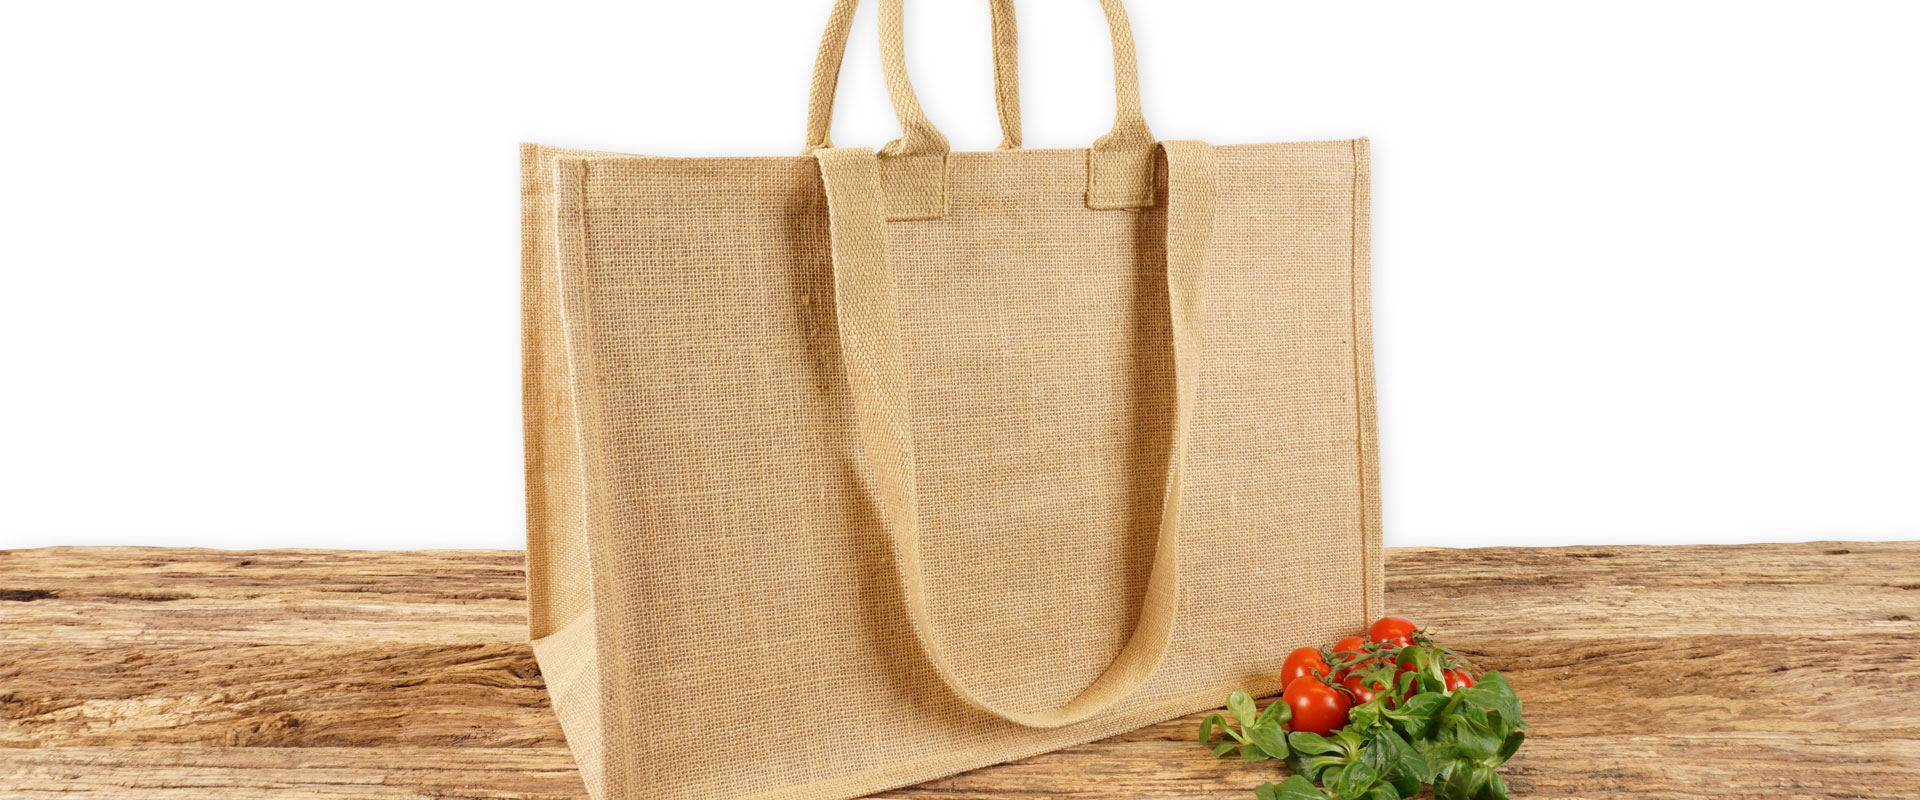 Einkaufstasche aus Jute naturfarben mit Seiten-Bodenfalte, groß, bedruckbar und mit kurzen runden und langen Tragegriffen auf Holz.